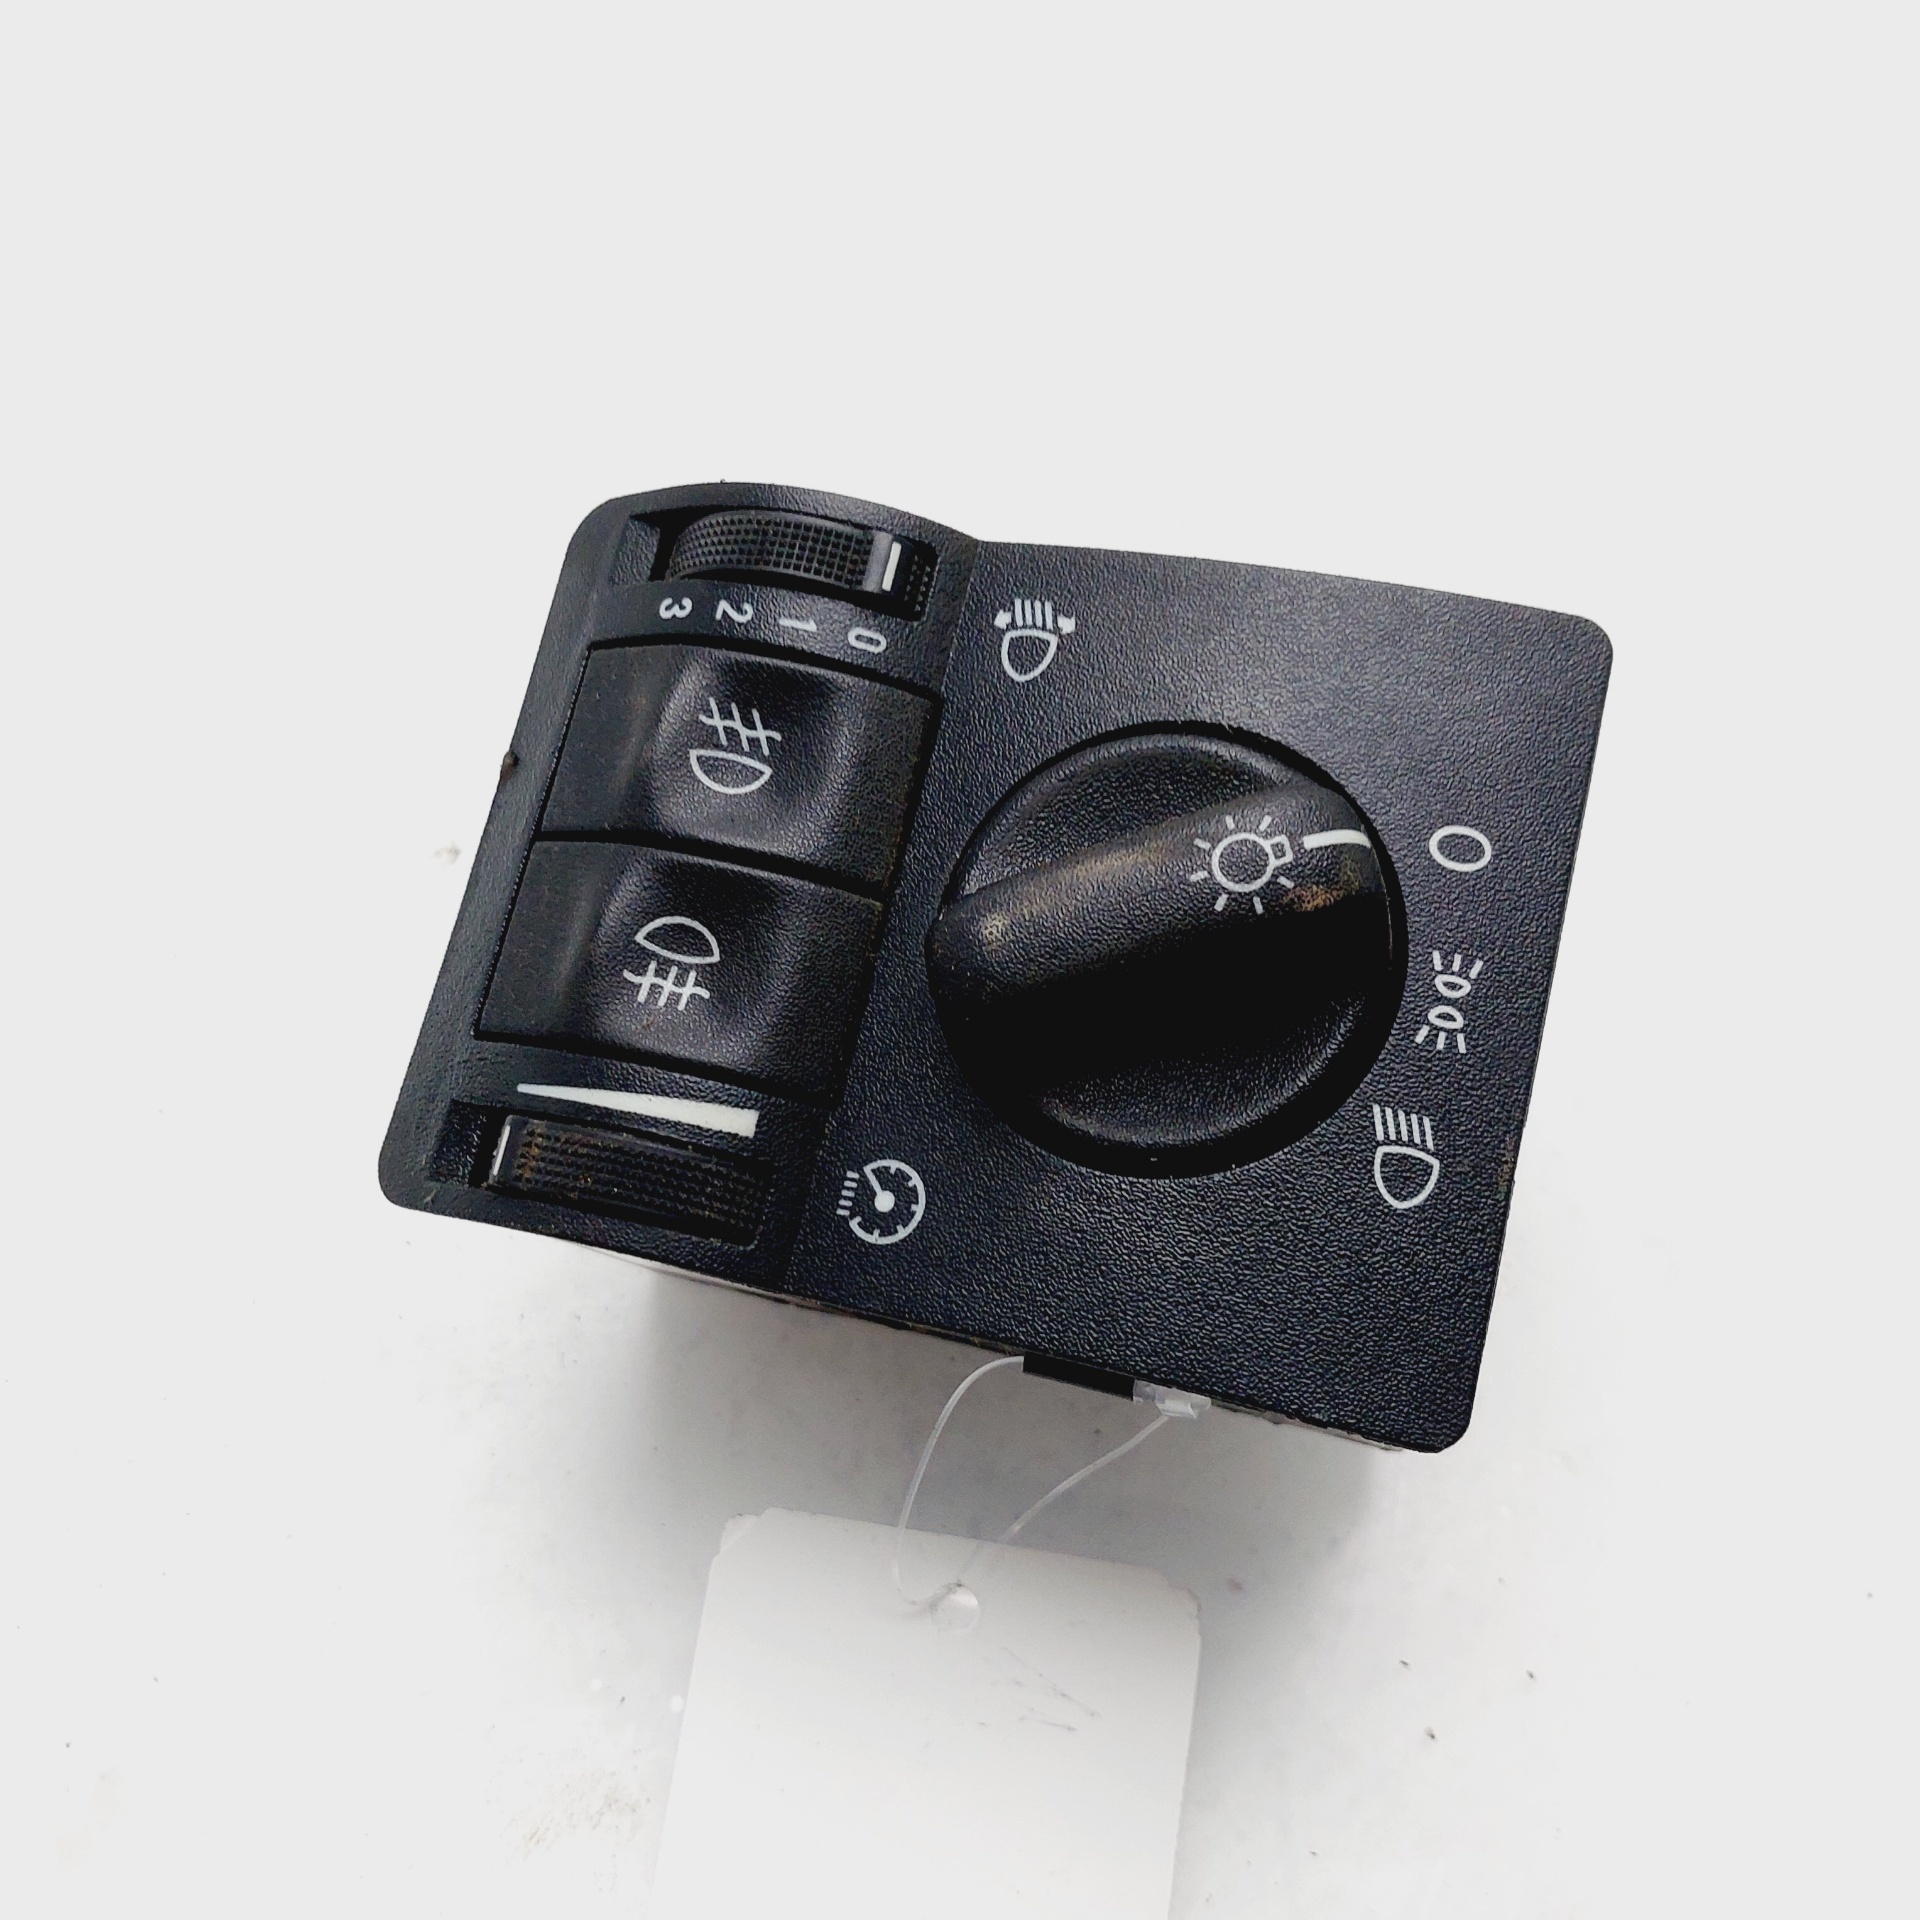 OPEL Zafira A (1999-2003) Headlight Switch Control Unit 09133249 25112207